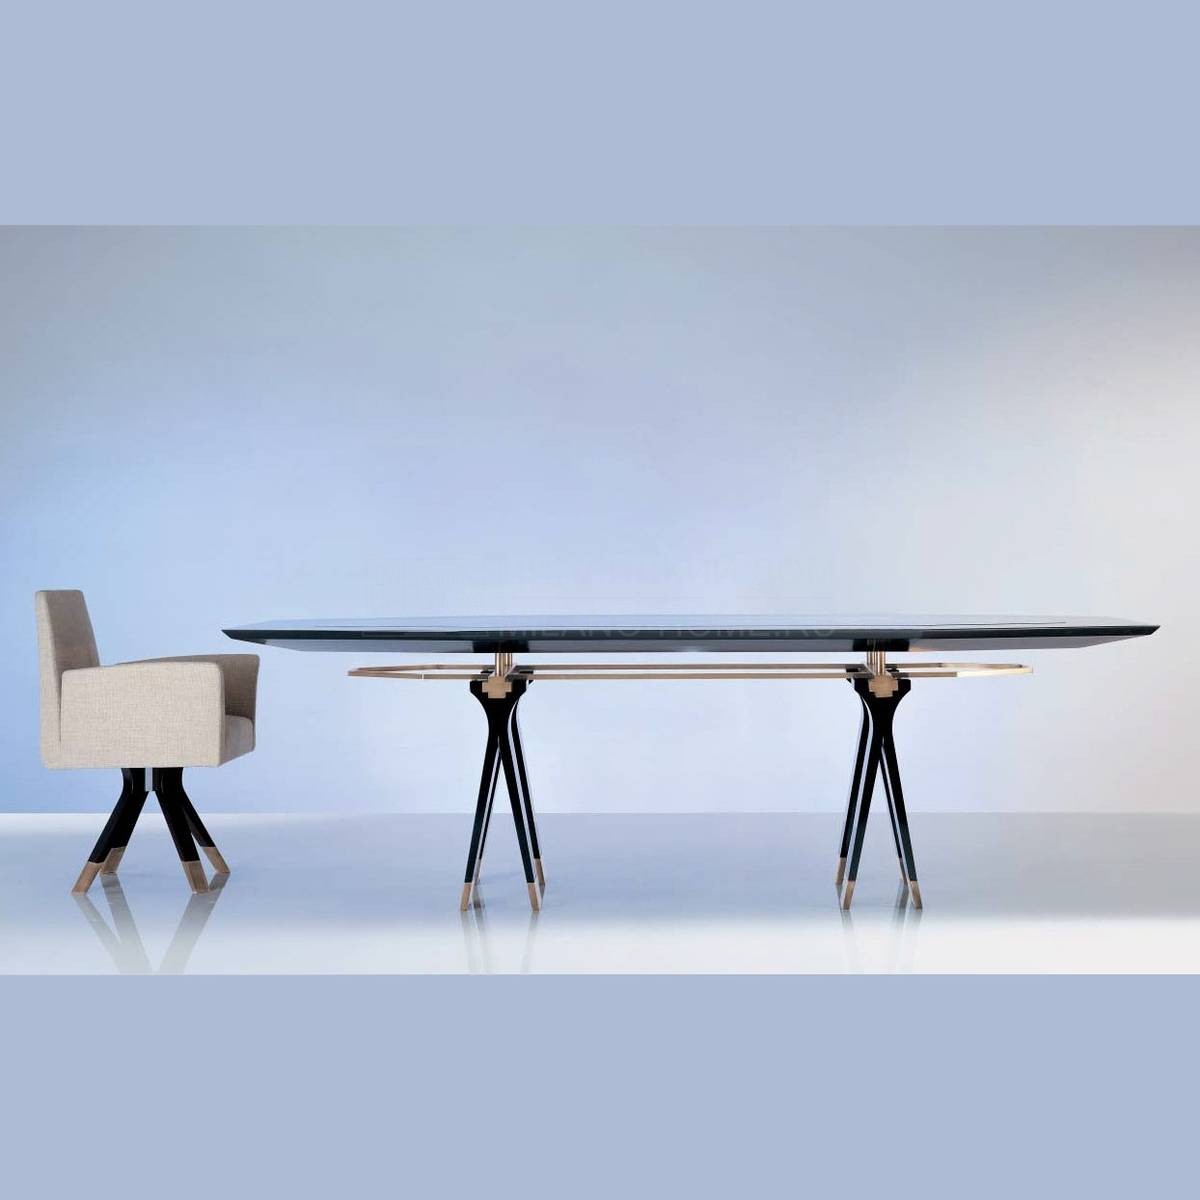 Переговорный стол Oak Design/SC 1013-c из Италии фабрики OAK